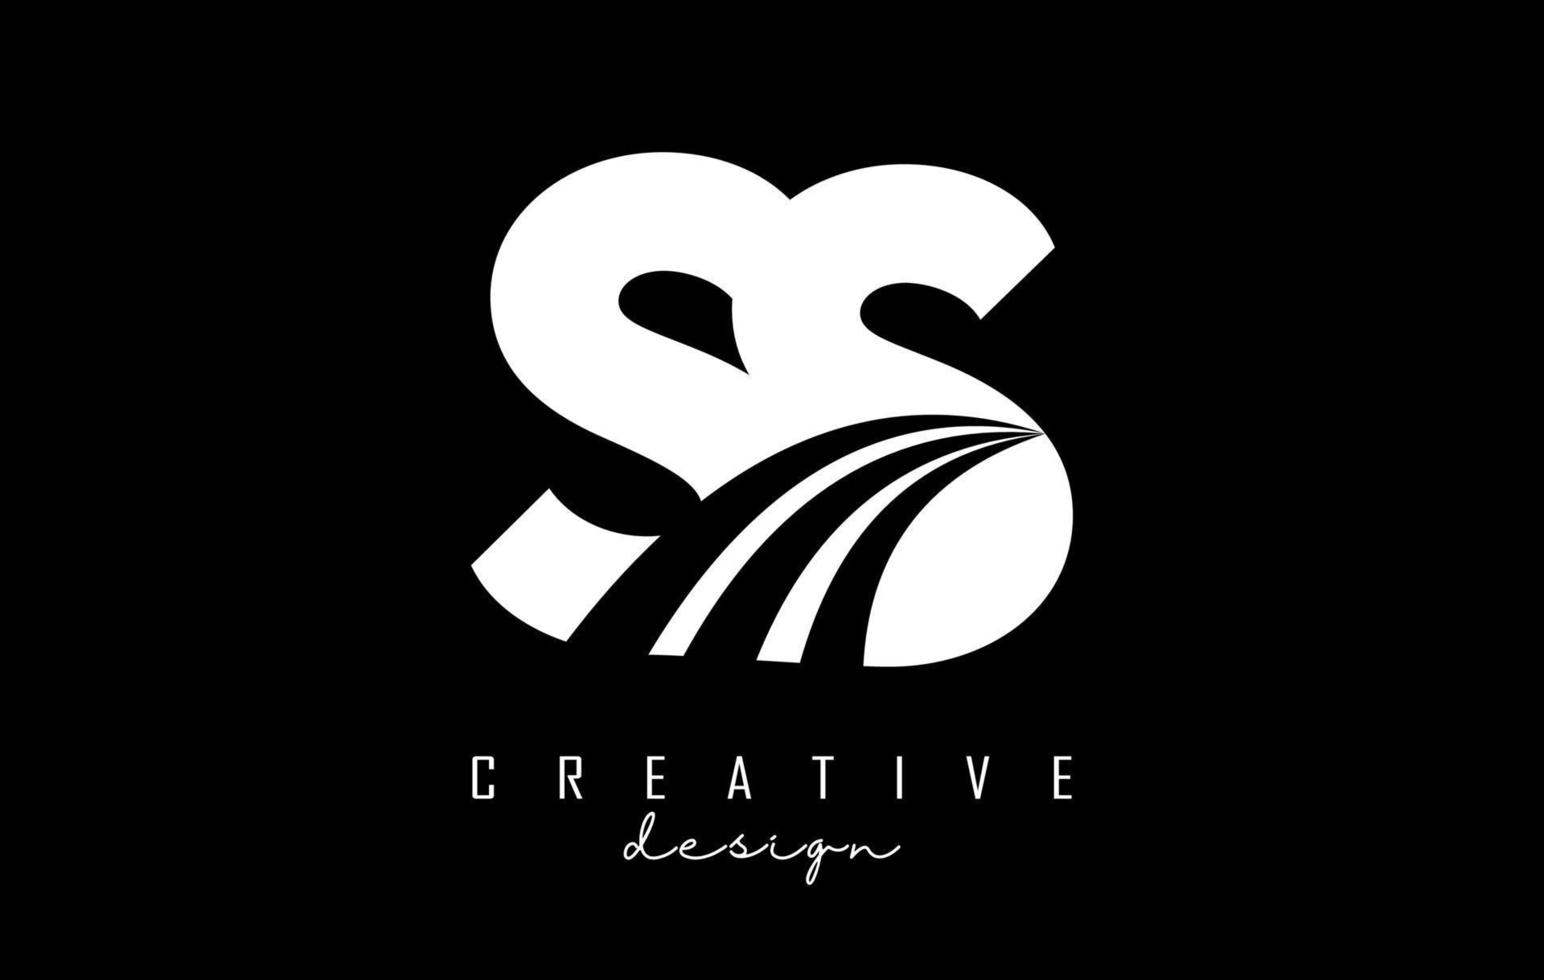 kreative weiße buchstaben ss s logo mit führenden linien und straßenkonzeptdesign. Buchstaben mit geometrischem Design. vektor